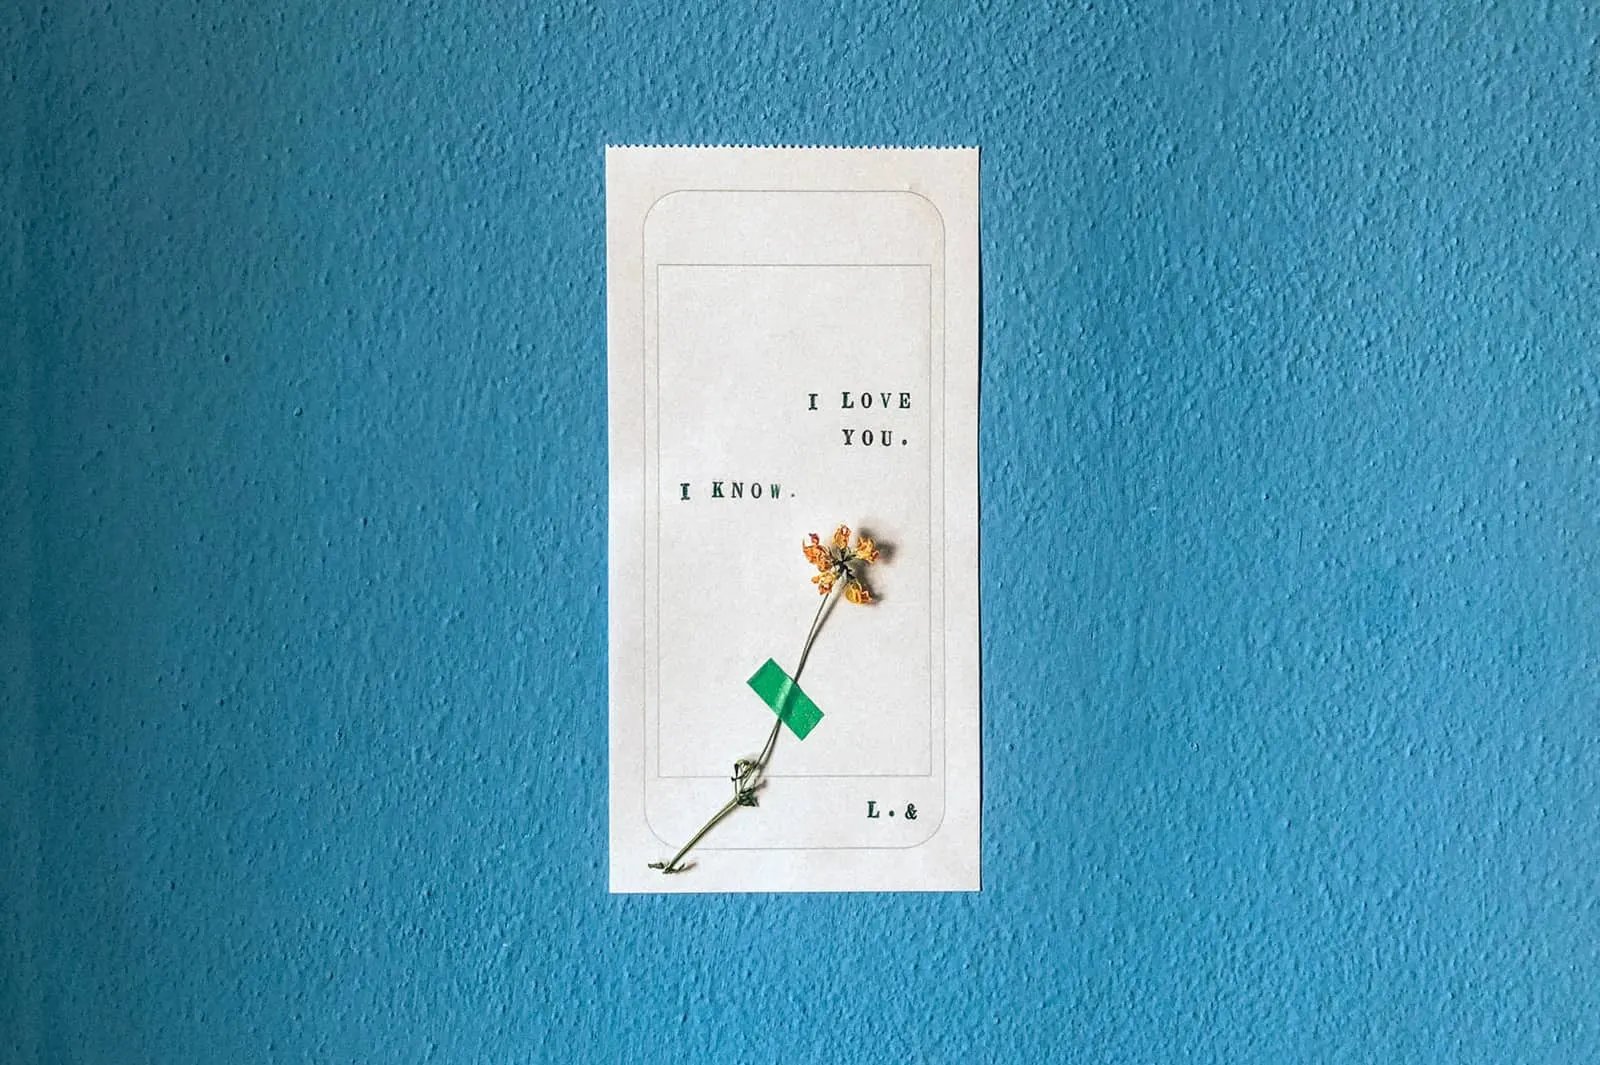 Liebesbotschaft auf Druckpapier mit einer Blume darauf